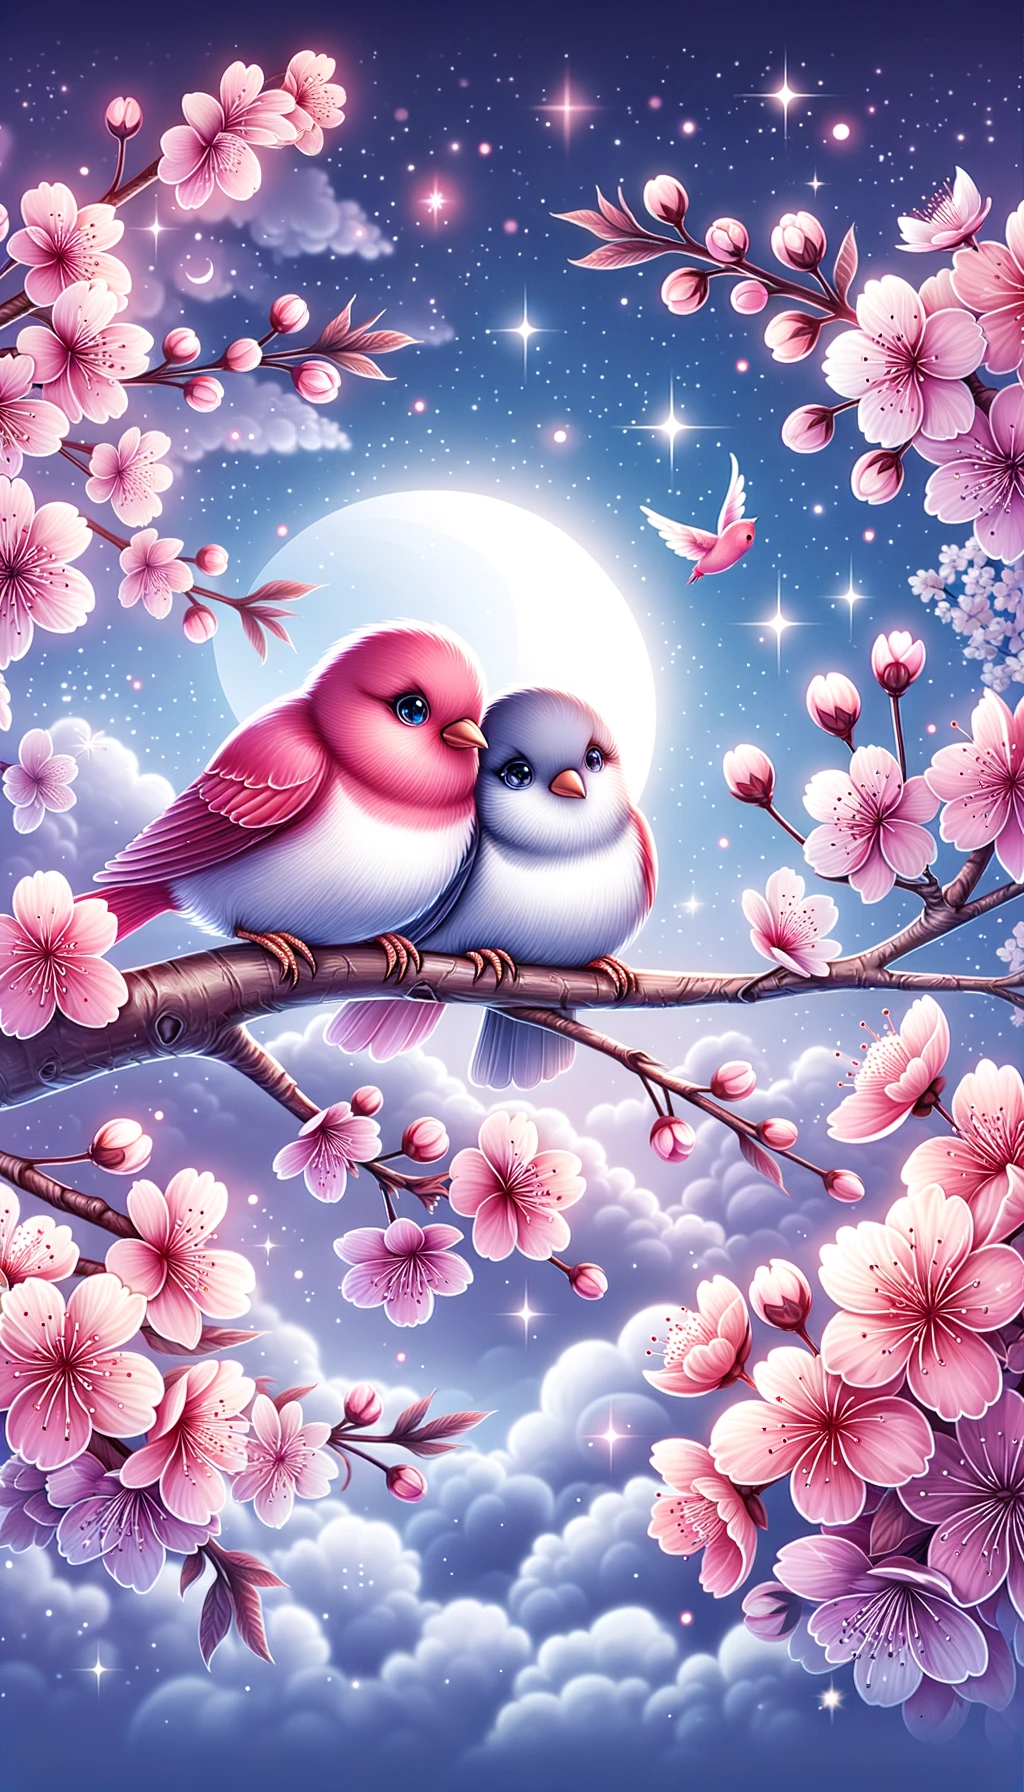 love birds, love image for wallpaper